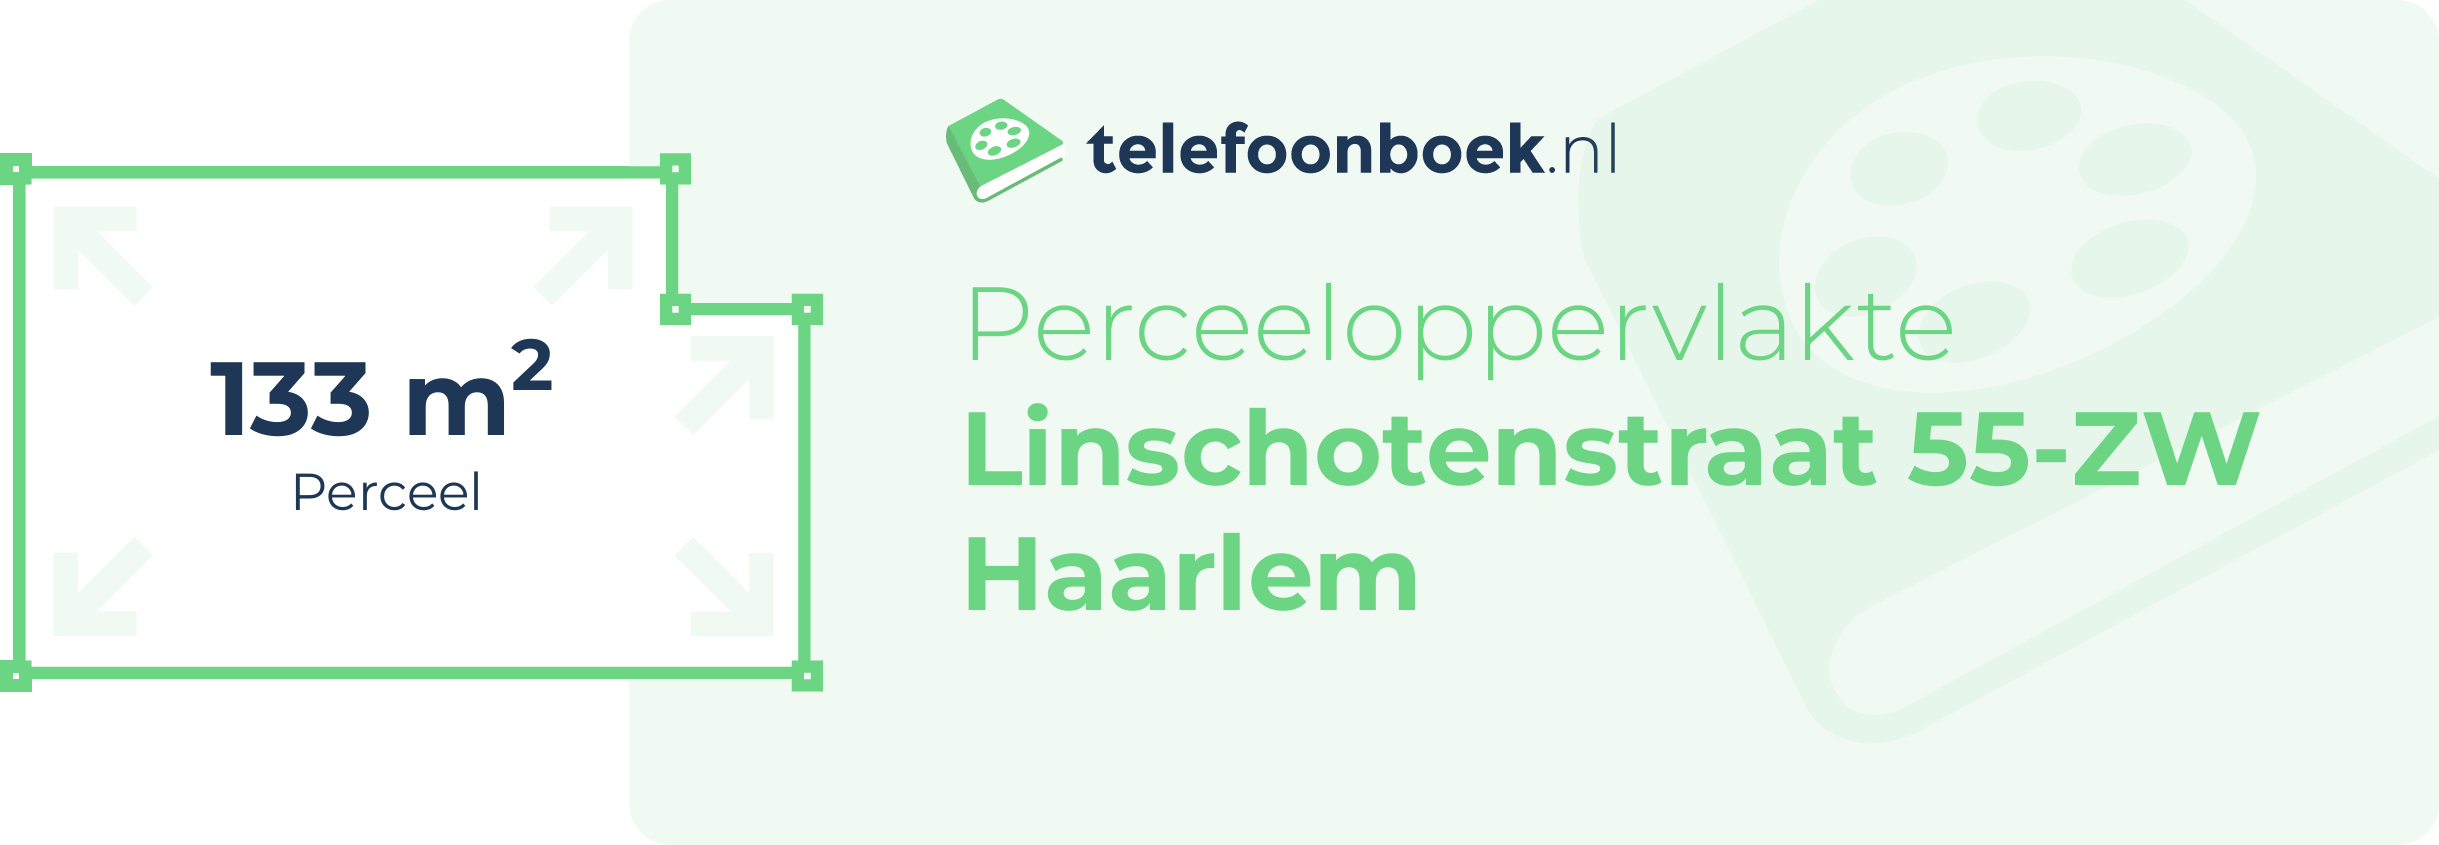 Perceeloppervlakte Linschotenstraat 55-ZW Haarlem